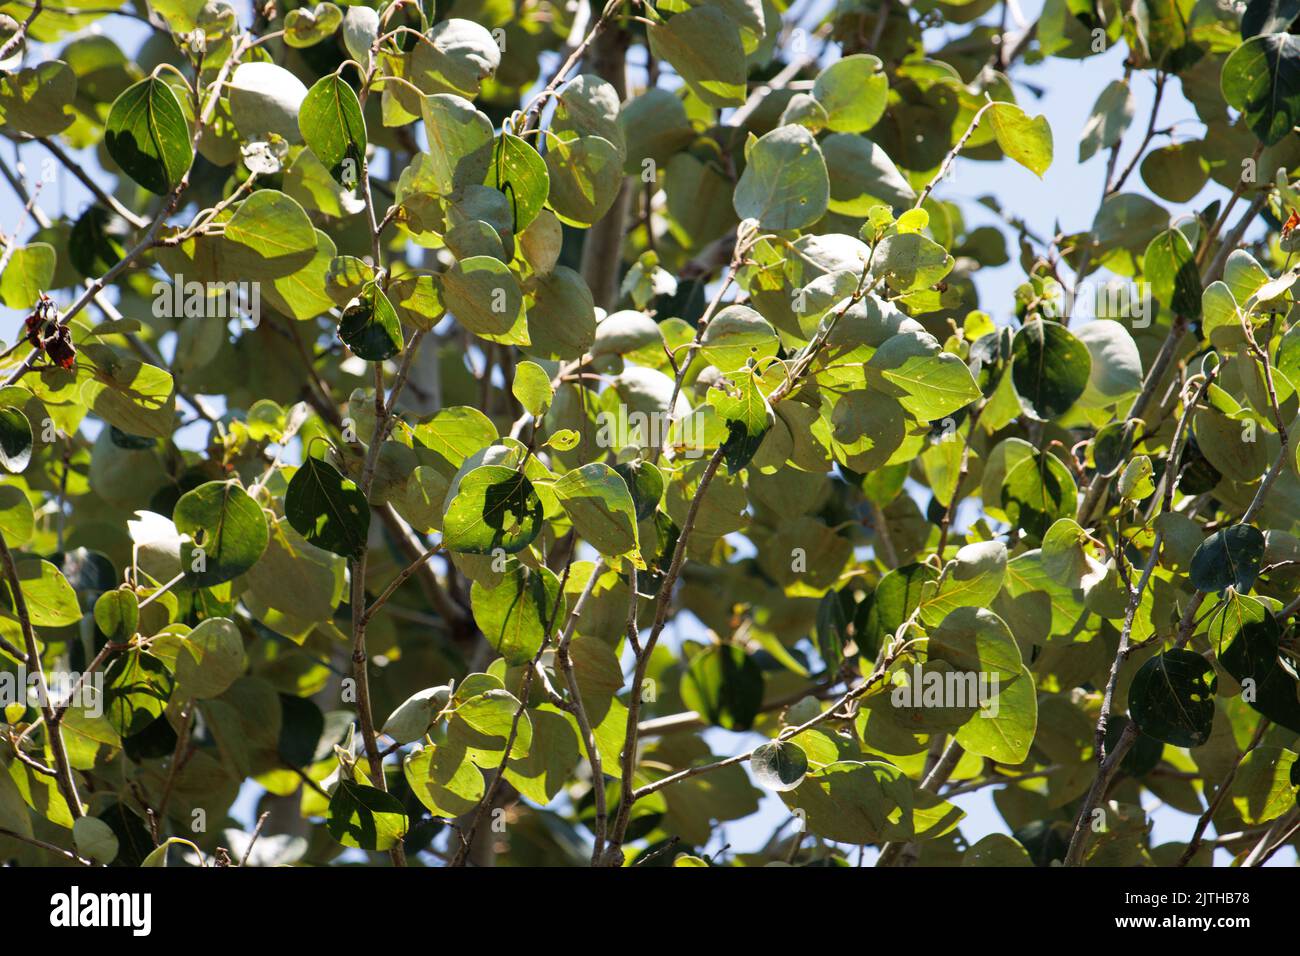 Vert simple alterné crenate feuilles glabres ovées de Populus trichocarpa, Salicaceae, arbre indigène dans les montagnes de San Bernardino, été. Banque D'Images